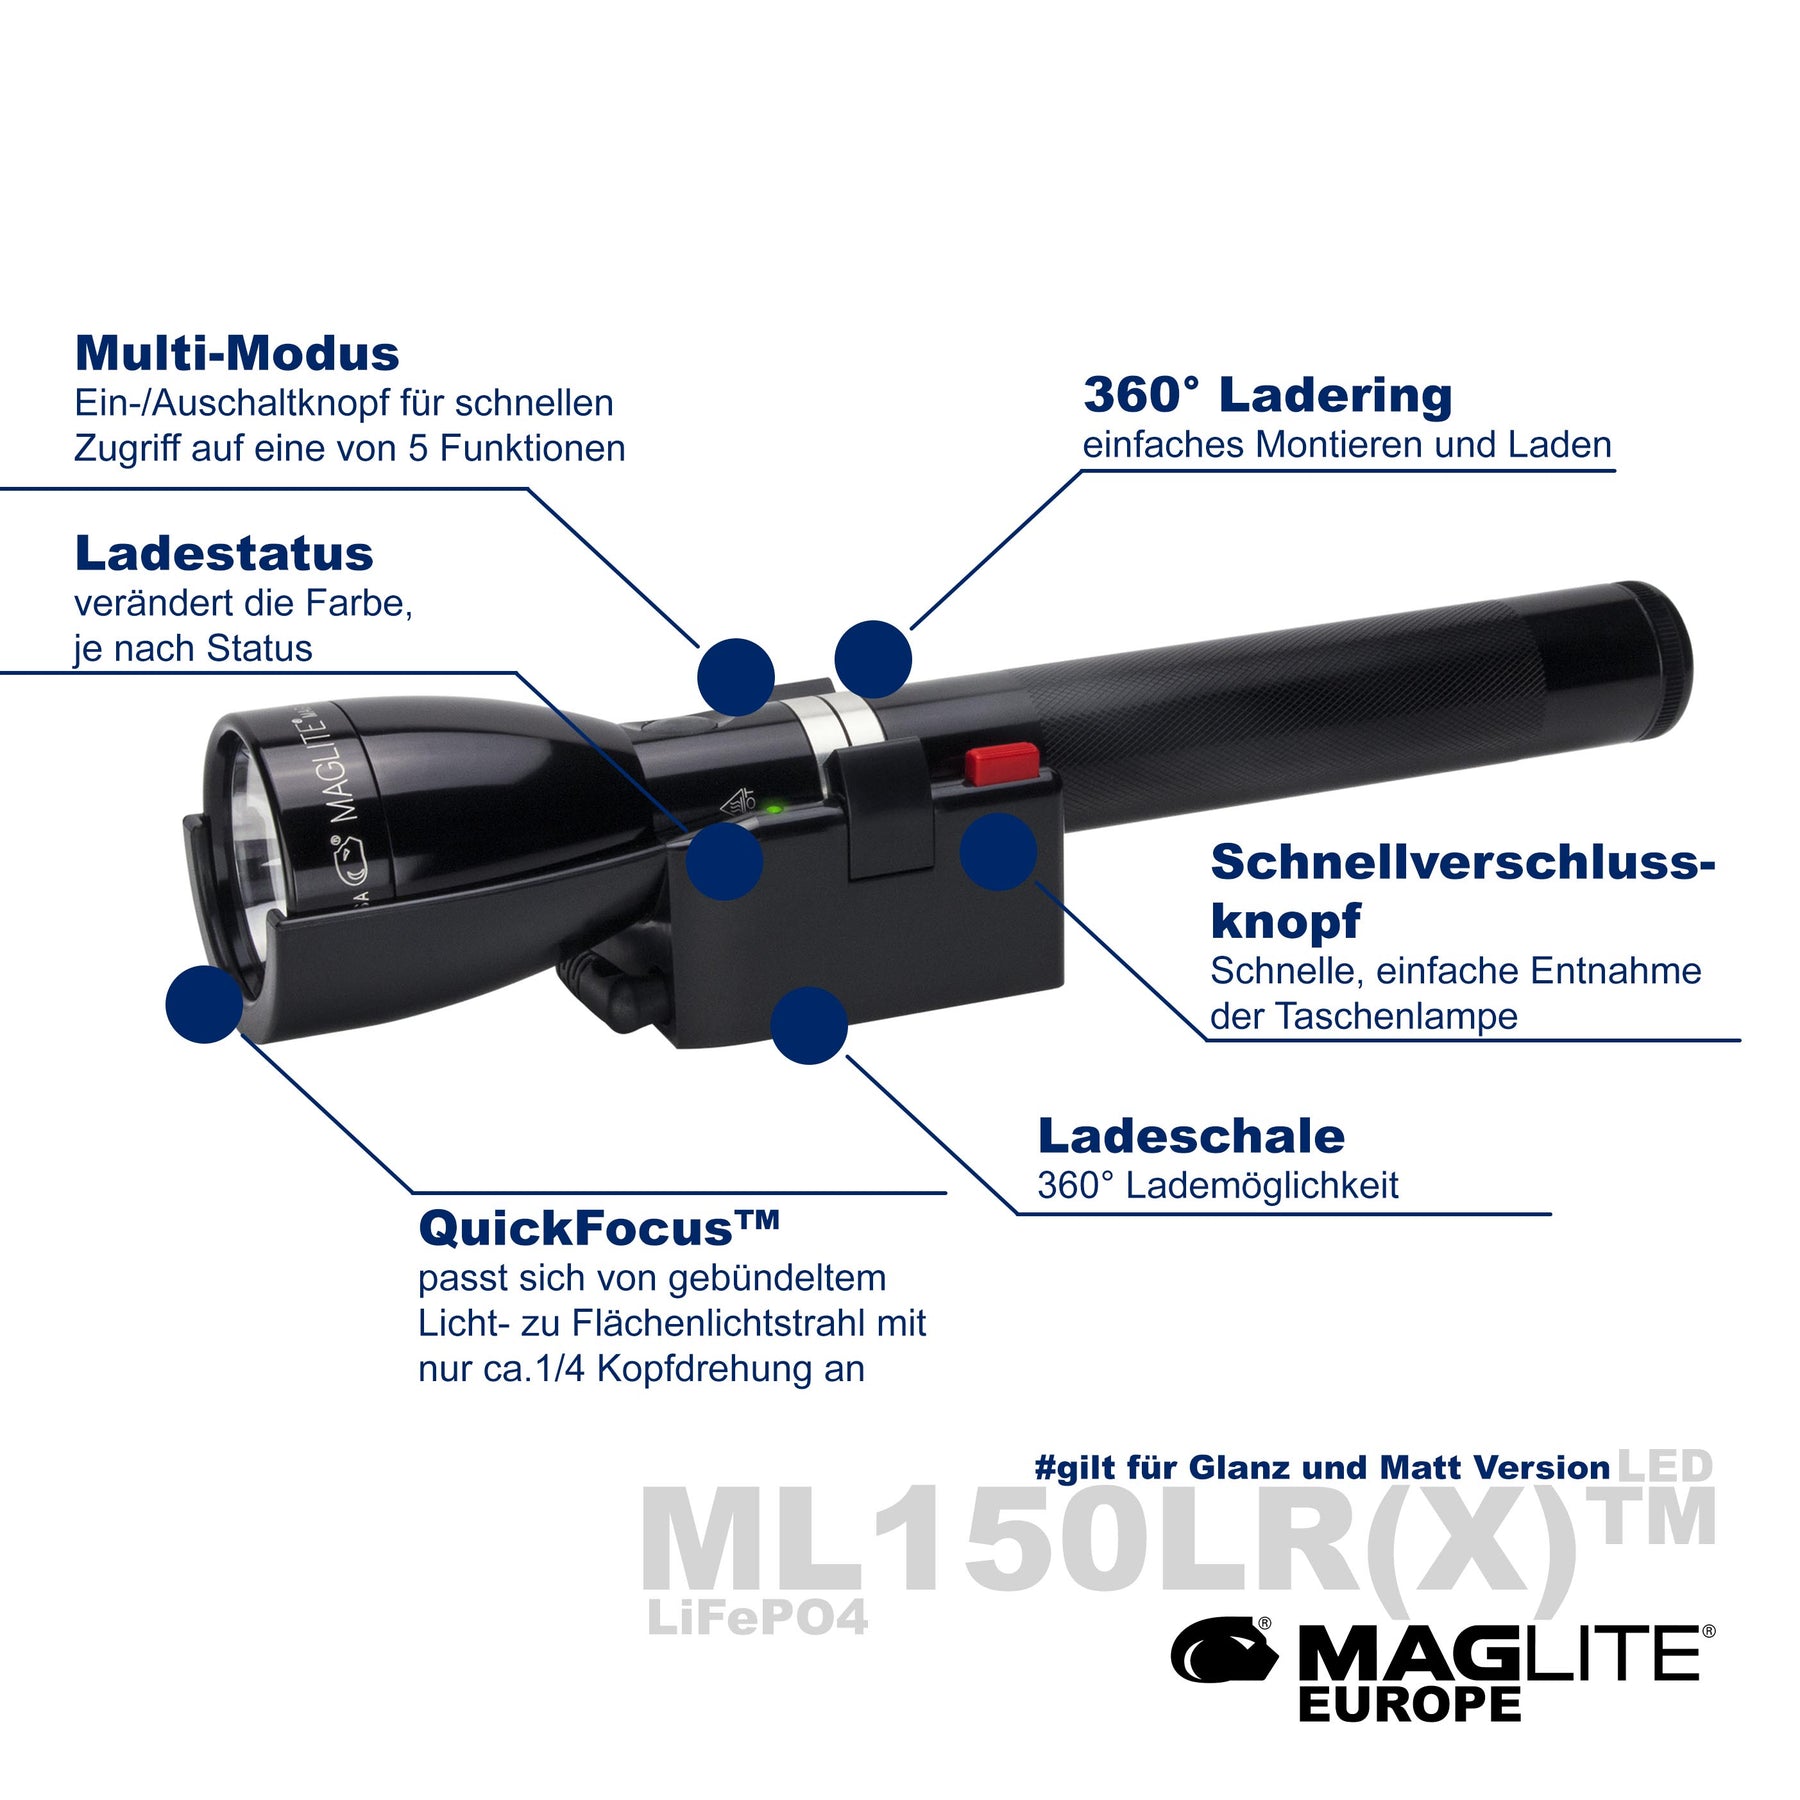 Confiable, recargable y siempre a tu alcance; así es la linterna Maglite ML  150LR LD, tu compañera ideal en situaciones de baja visibilidad…